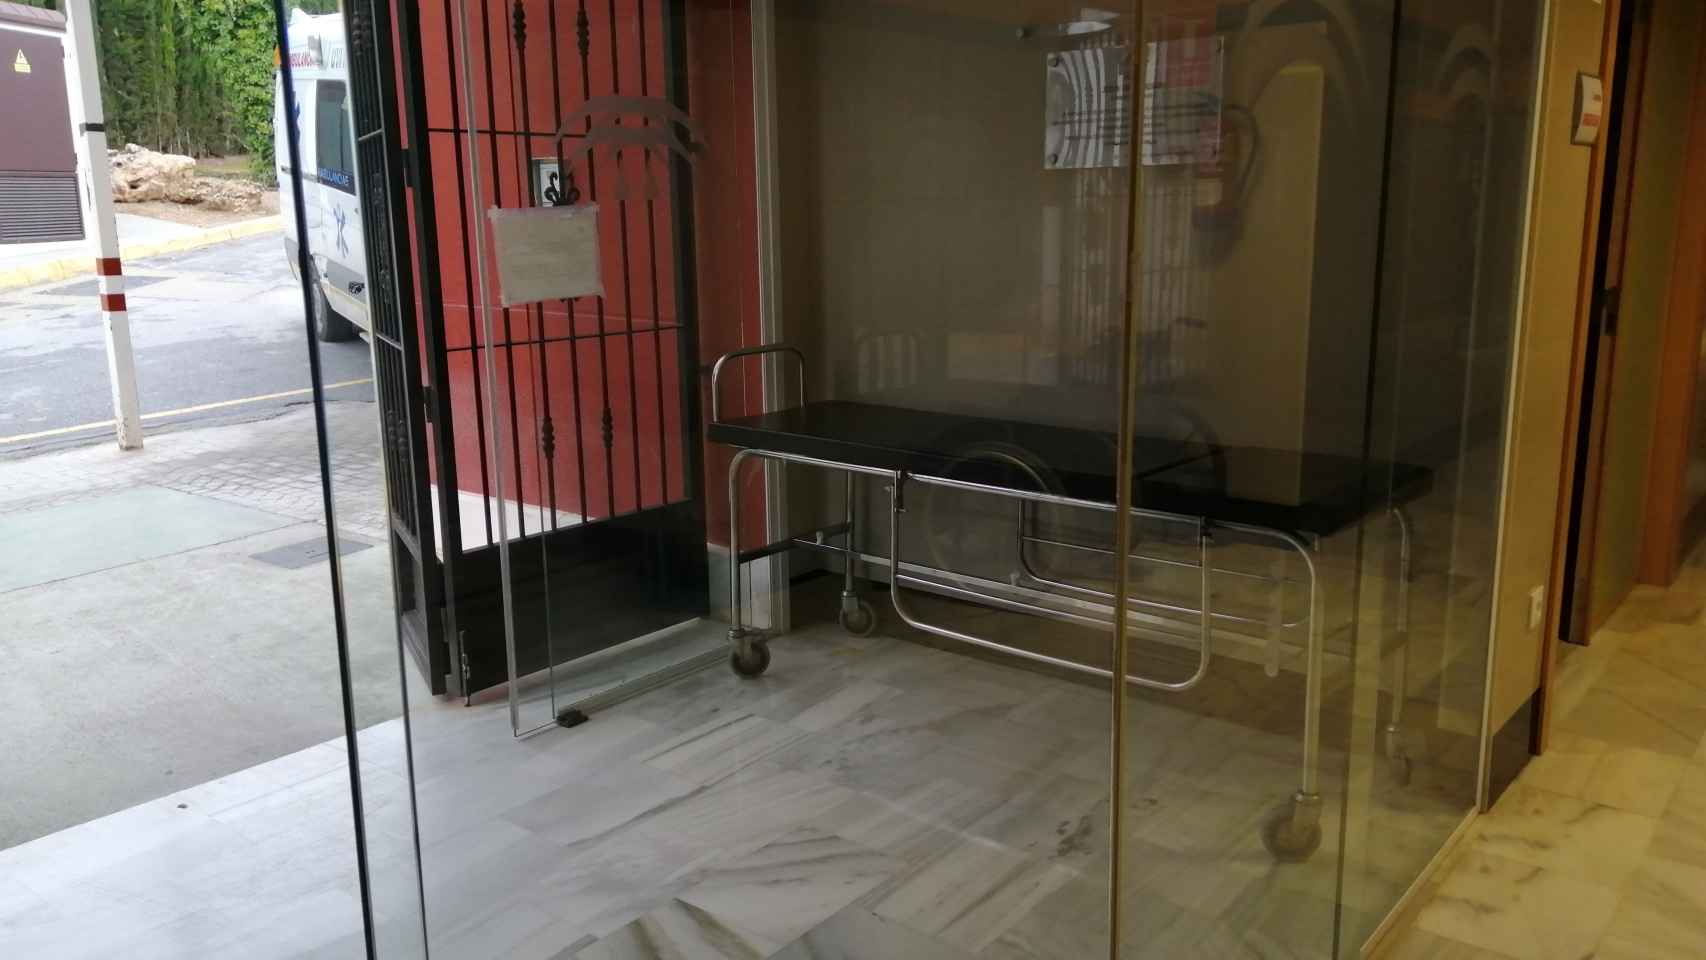 La camilla del centro de salud donde Francisco dejó el cuerpo de Saíd.